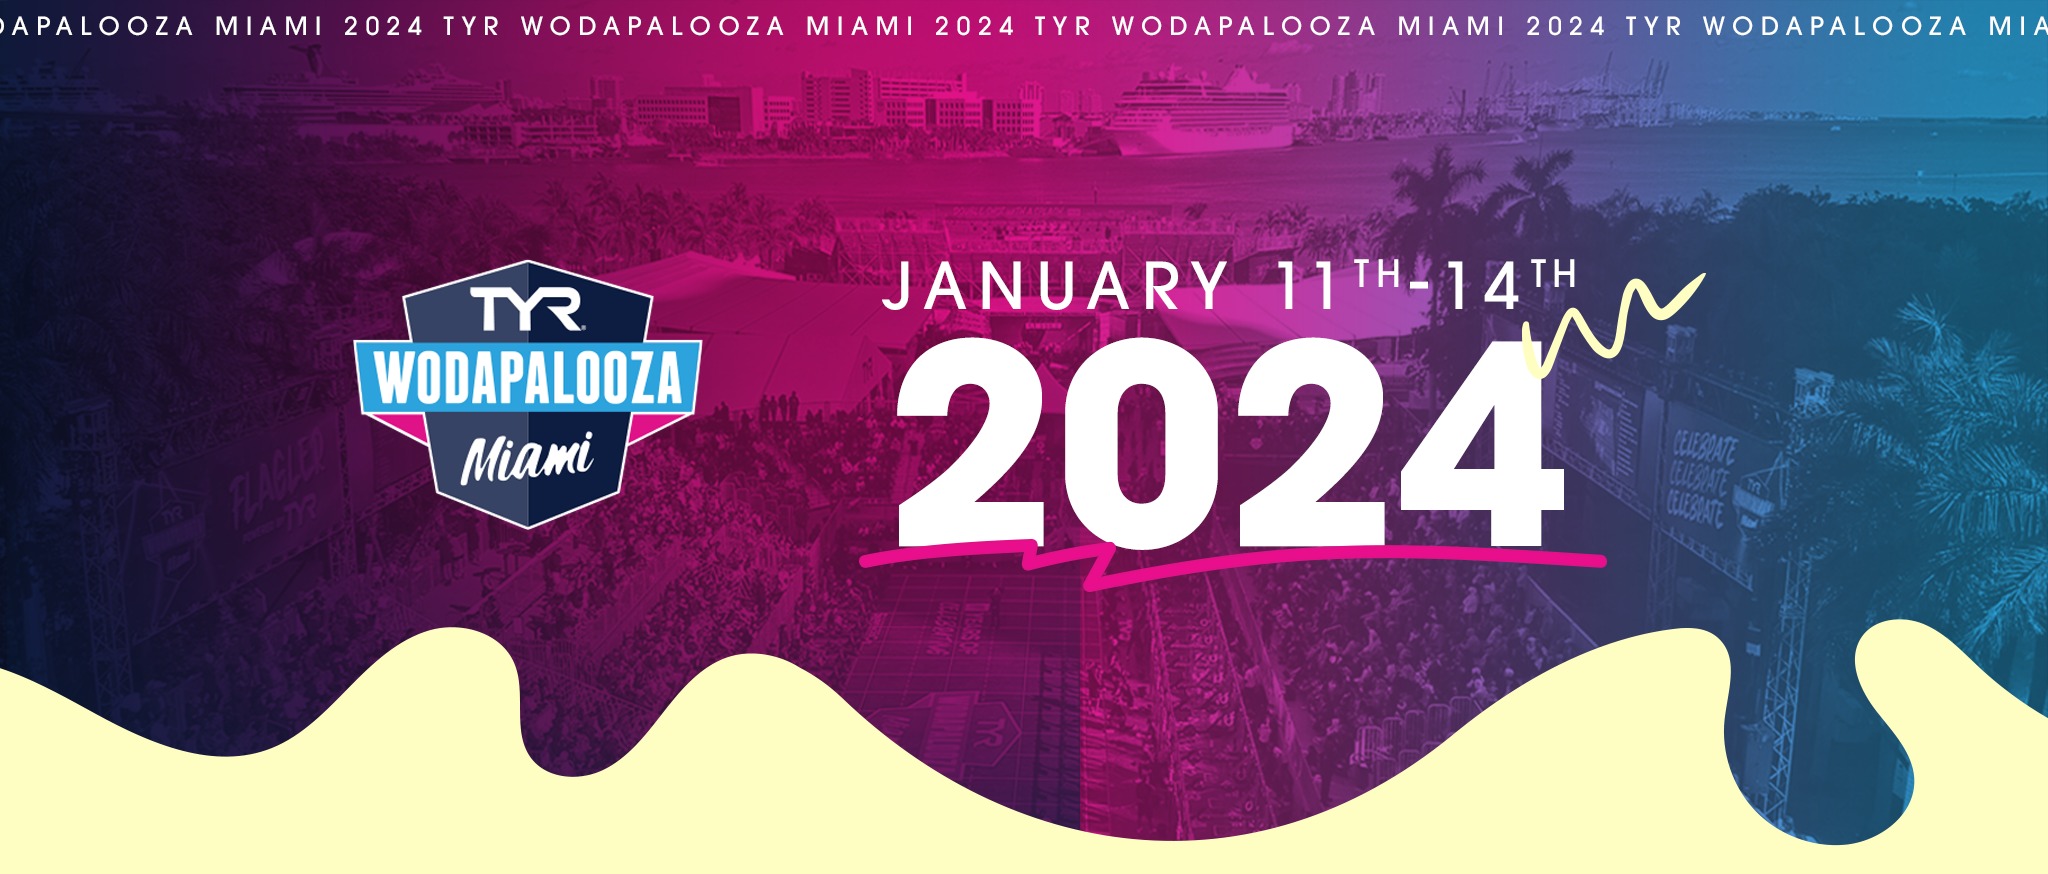 Watch The TYR Wodapalooza Miami 2024 Live Stream Online!!